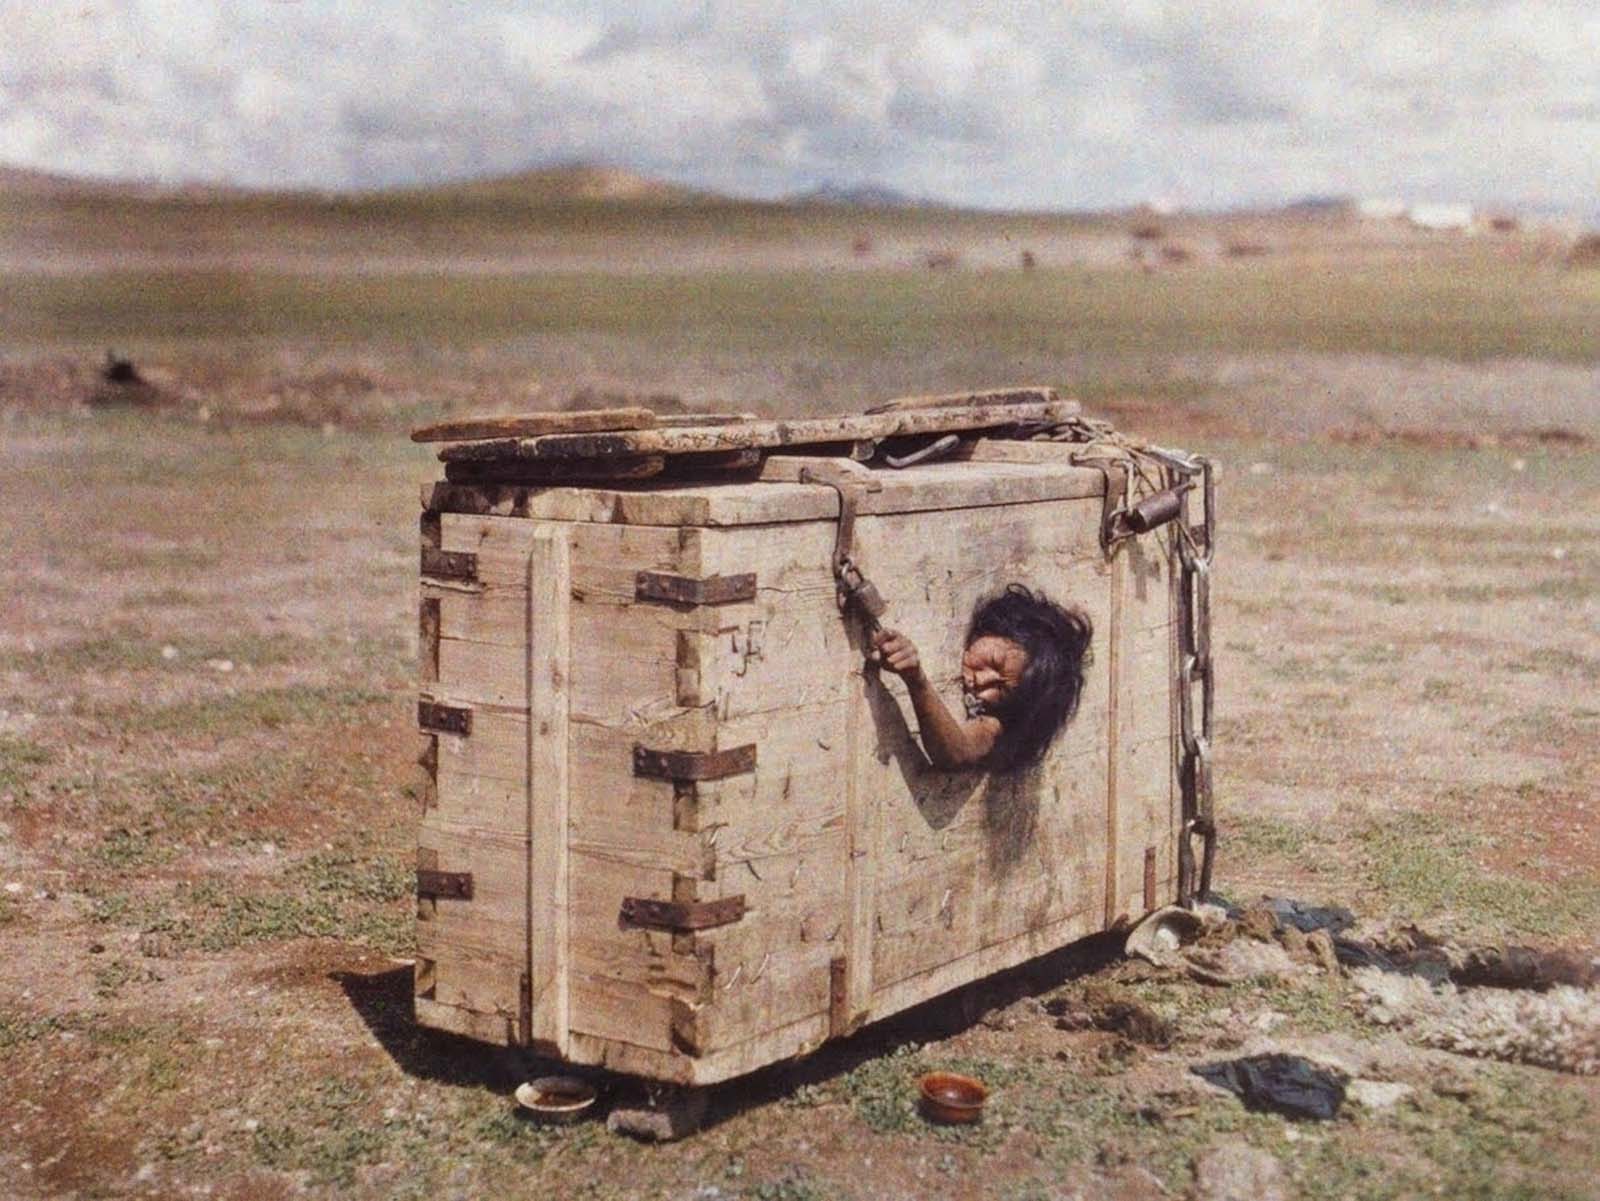 Une femme de nationalité mongole atteint depuis le hublot d'une caisse dans laquelle elle est emprisonnée, 1913